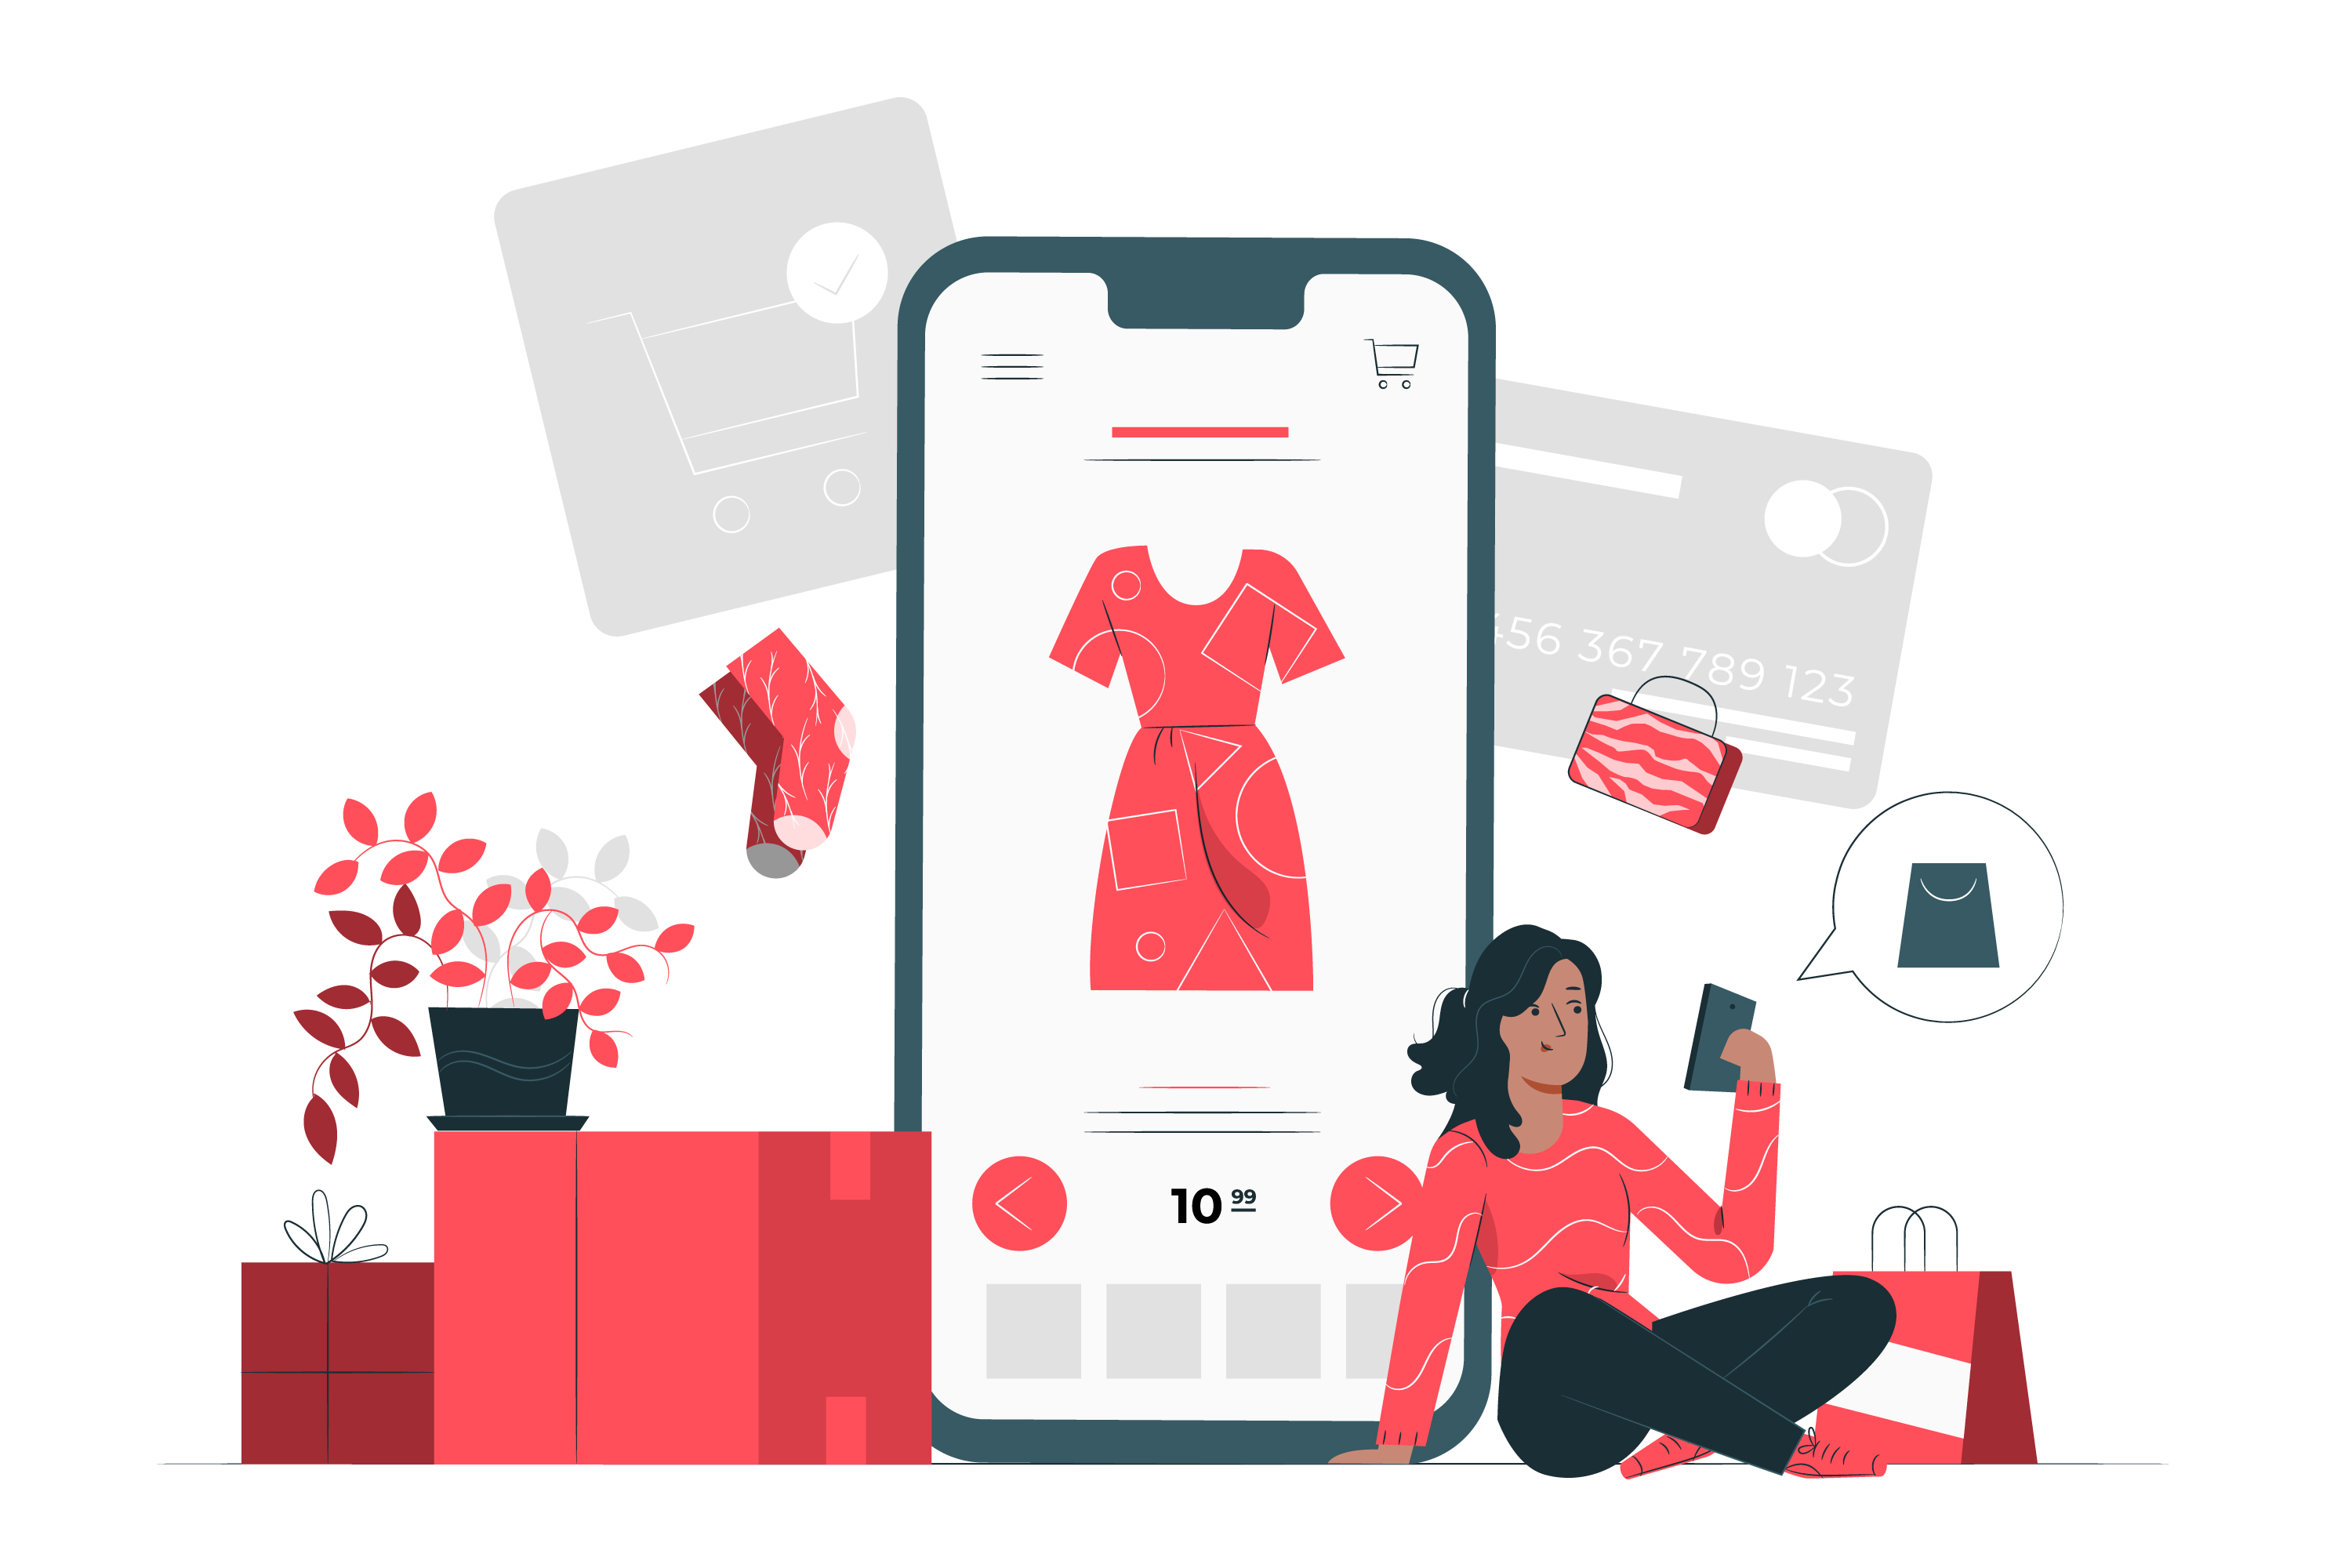 illustration of girl using mobile app for PH e-commerce purchases through online shopping